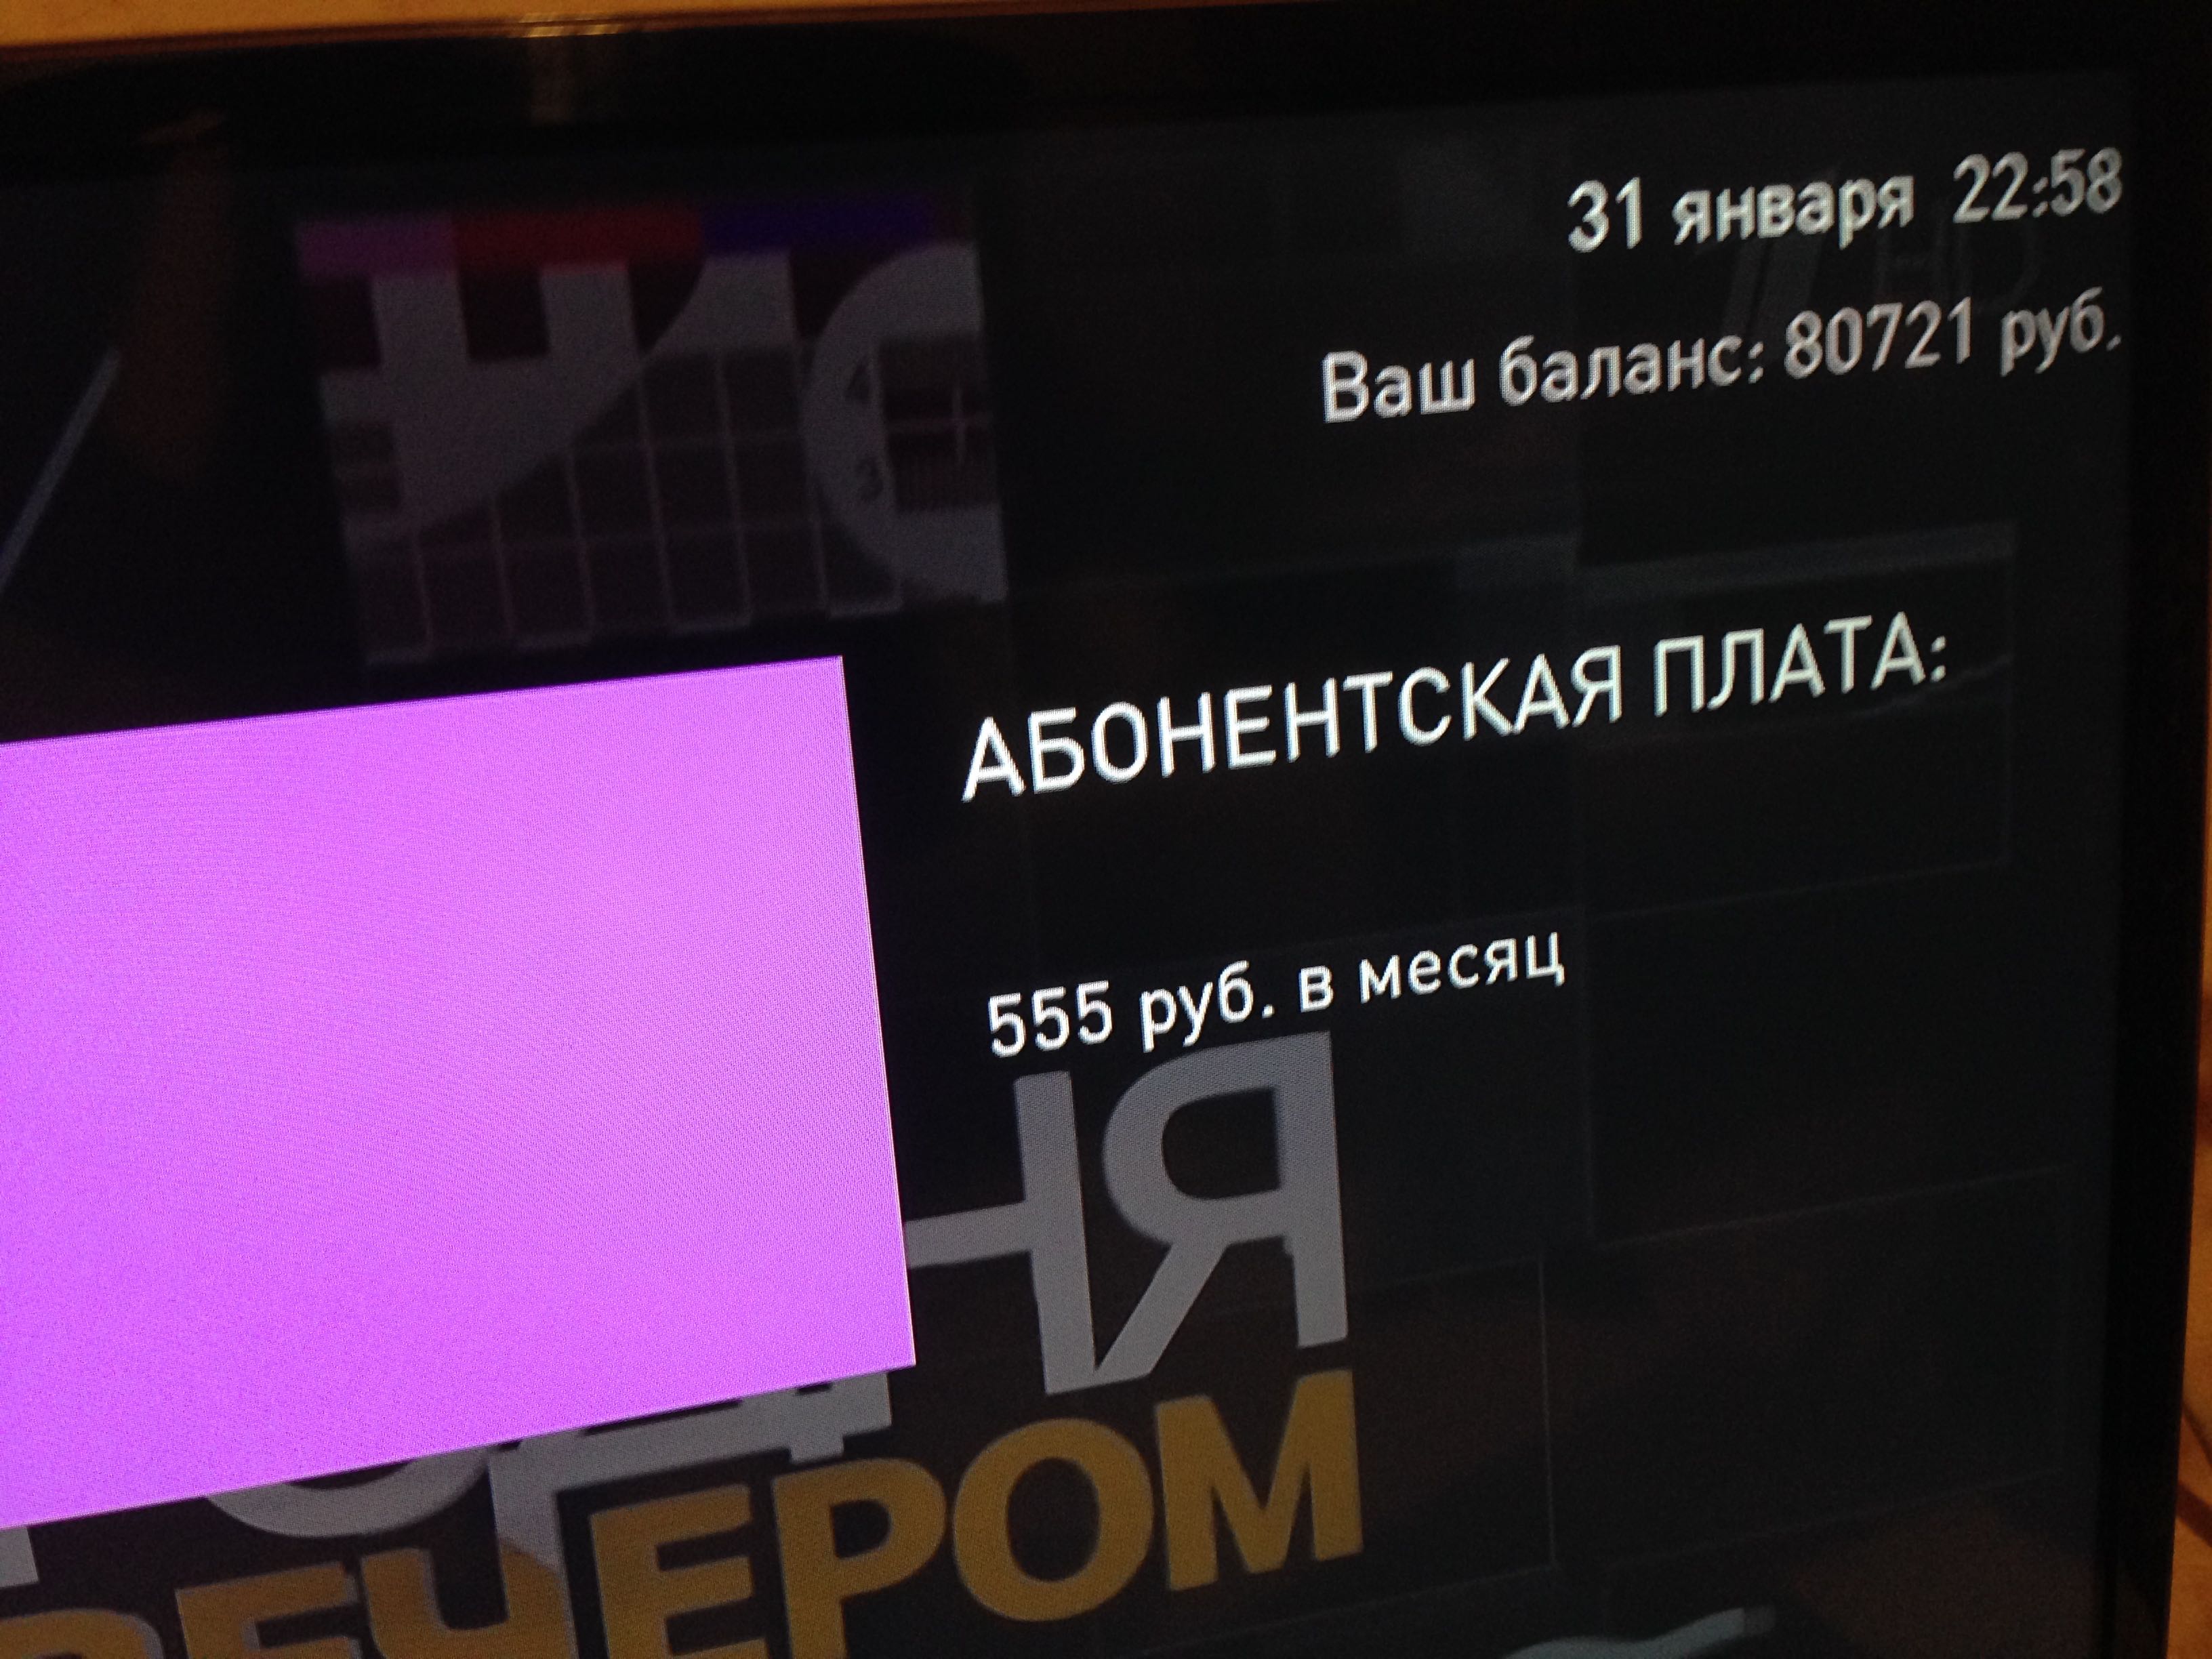 Ростелеком интерактивное ТВ способно отображать на экране тарифы на телевидение. 555 рублей в месяц